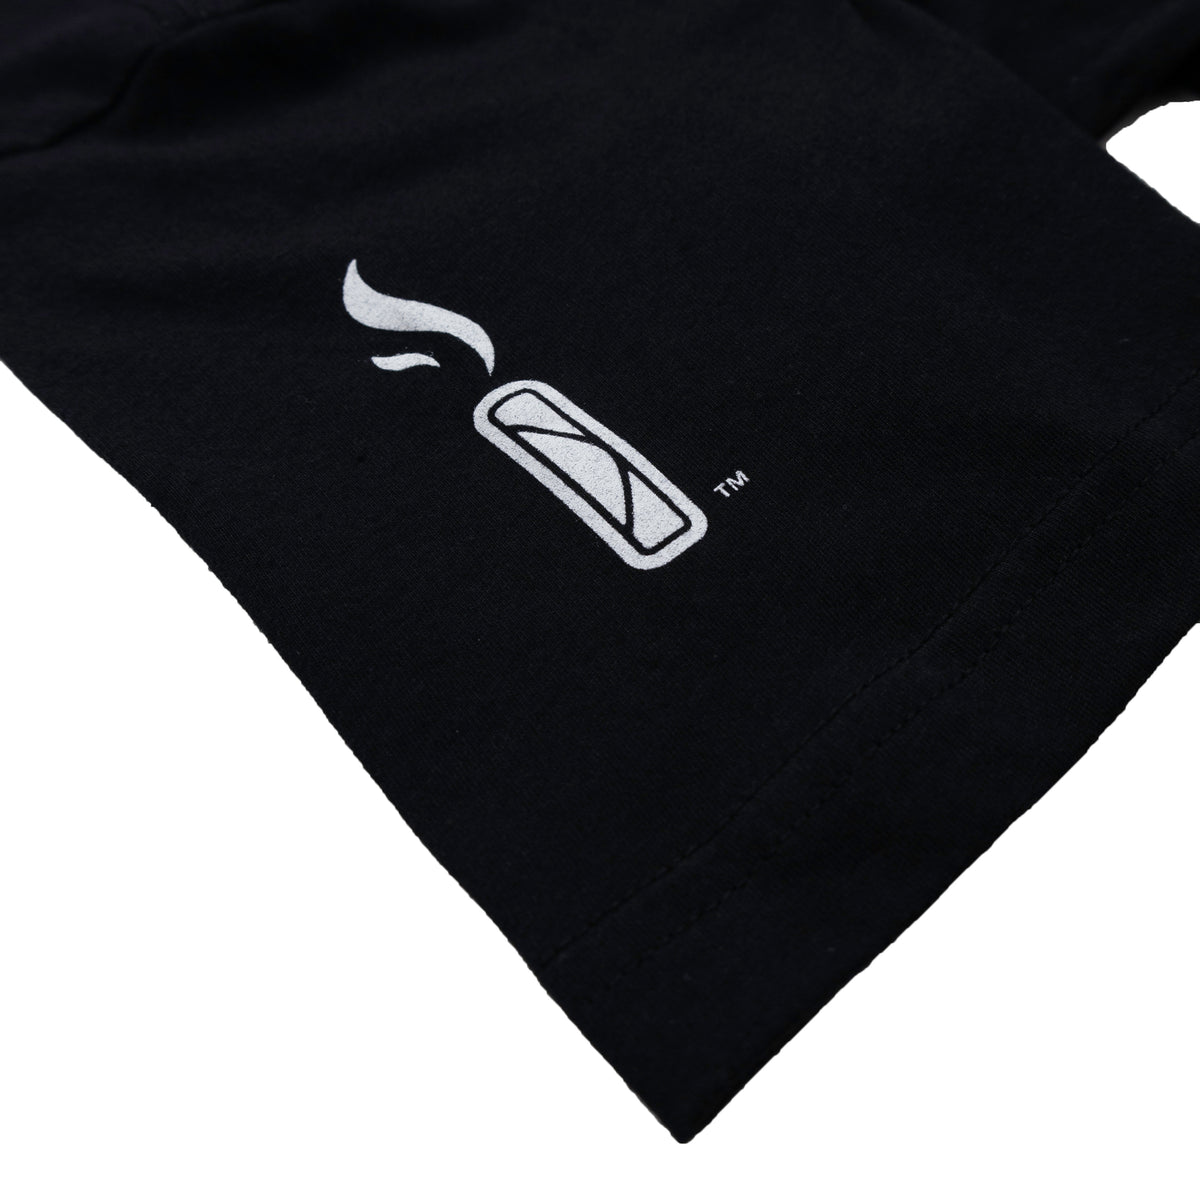 Lumpia Oakland Athletics T-Shirt – The Lumpia Company